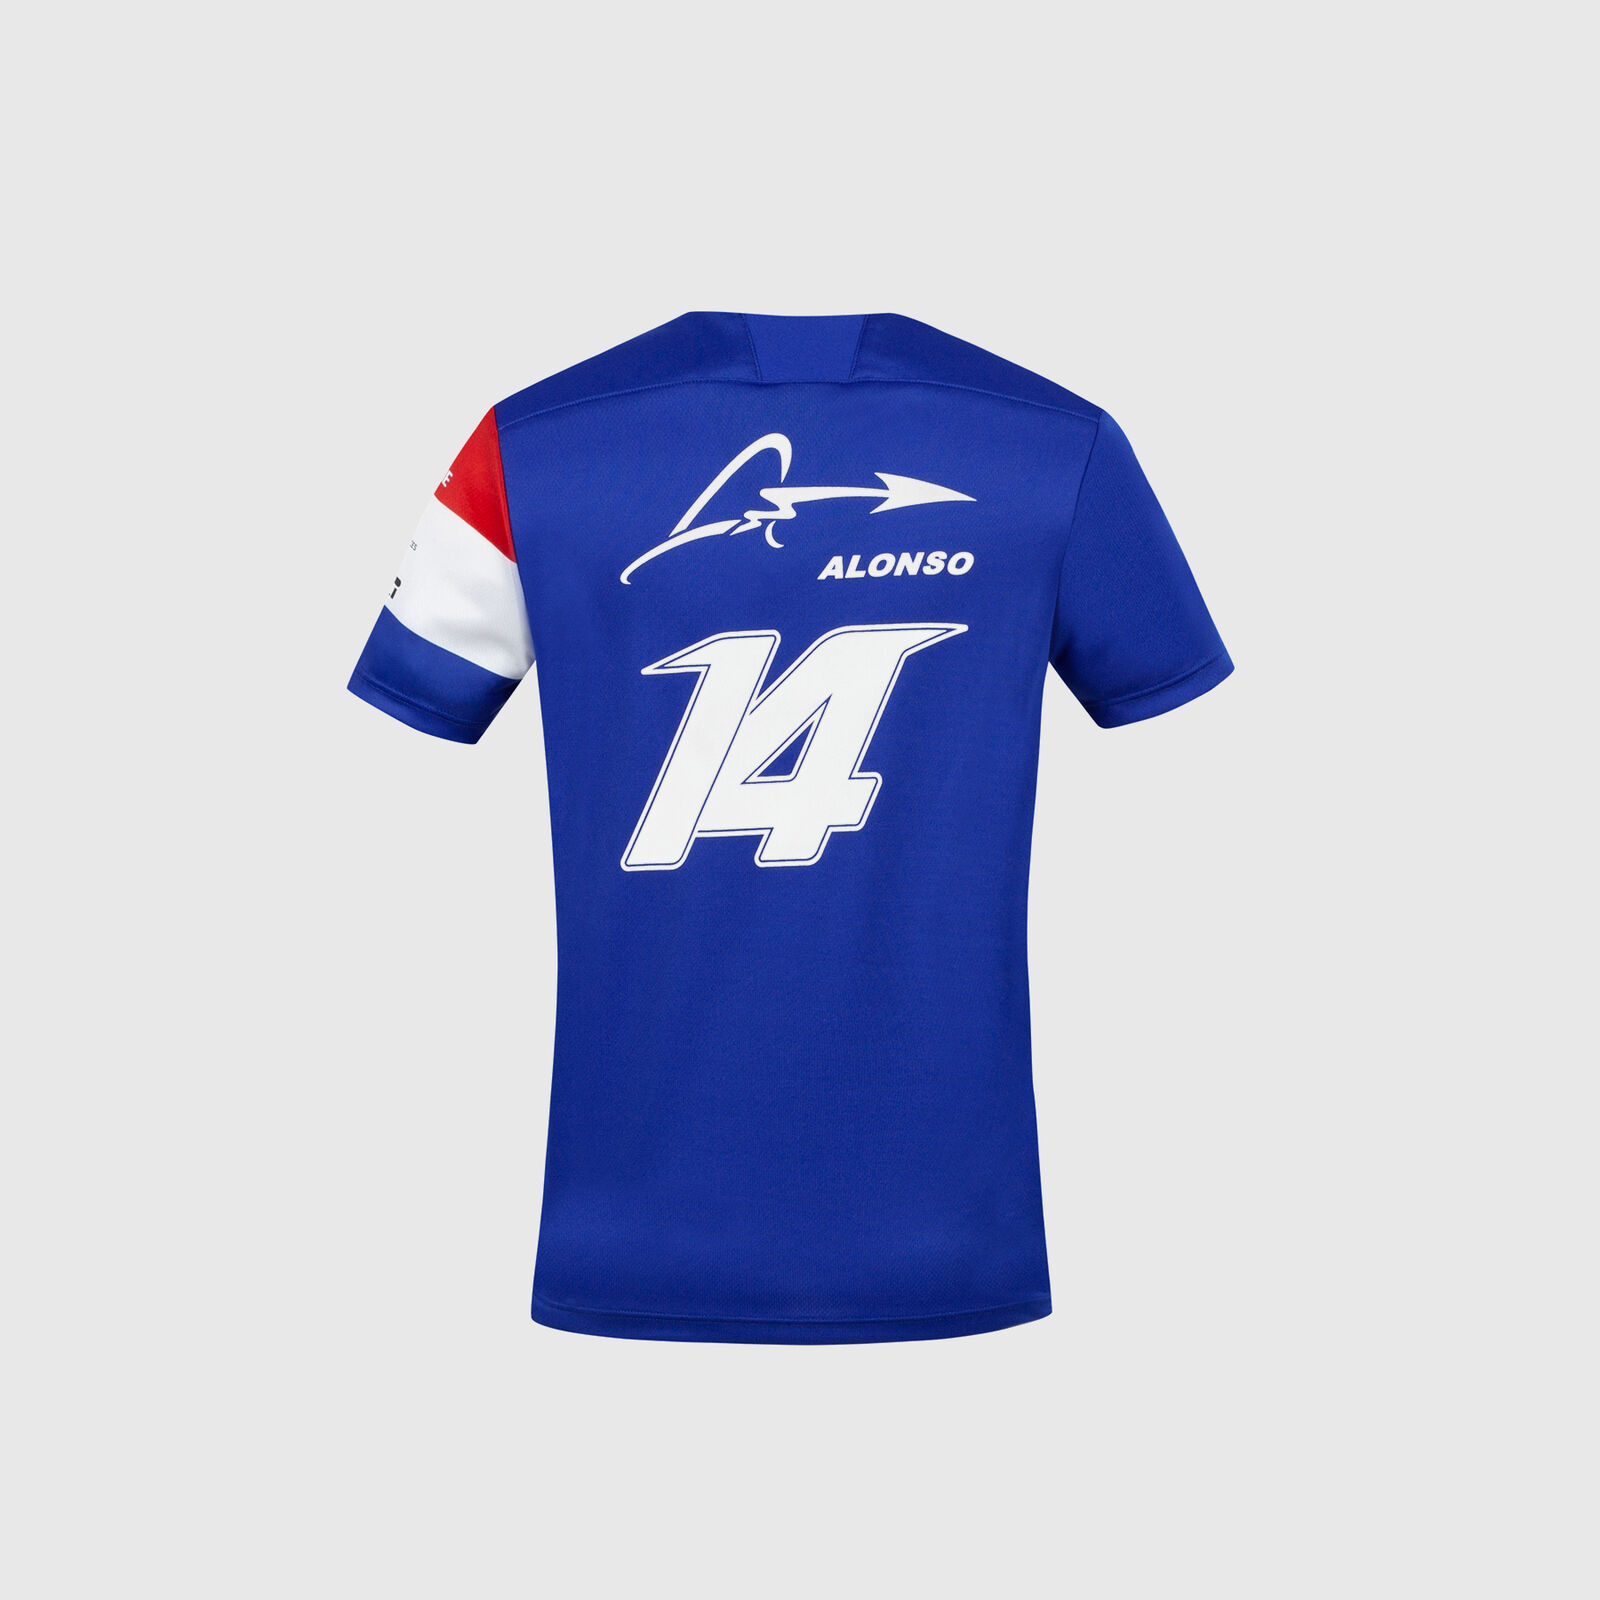 Camiseta del equipo de Fernando Alonso 2021 - Alpine F1